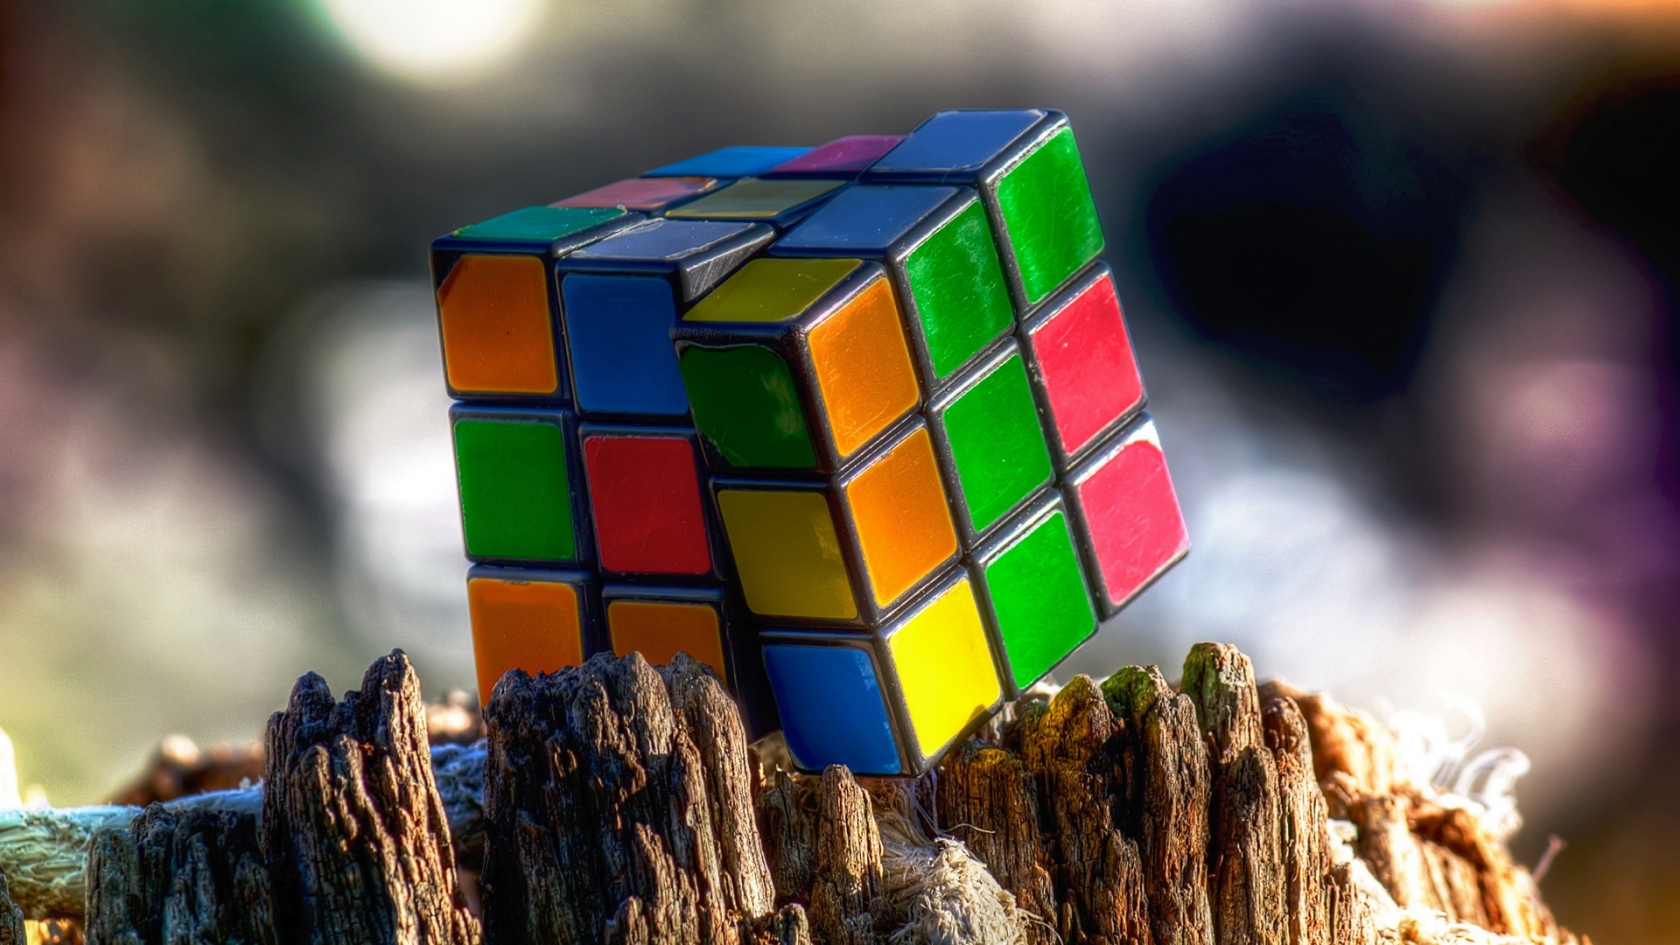 Rubiks Cube for 1680 x 945 HDTV resolution